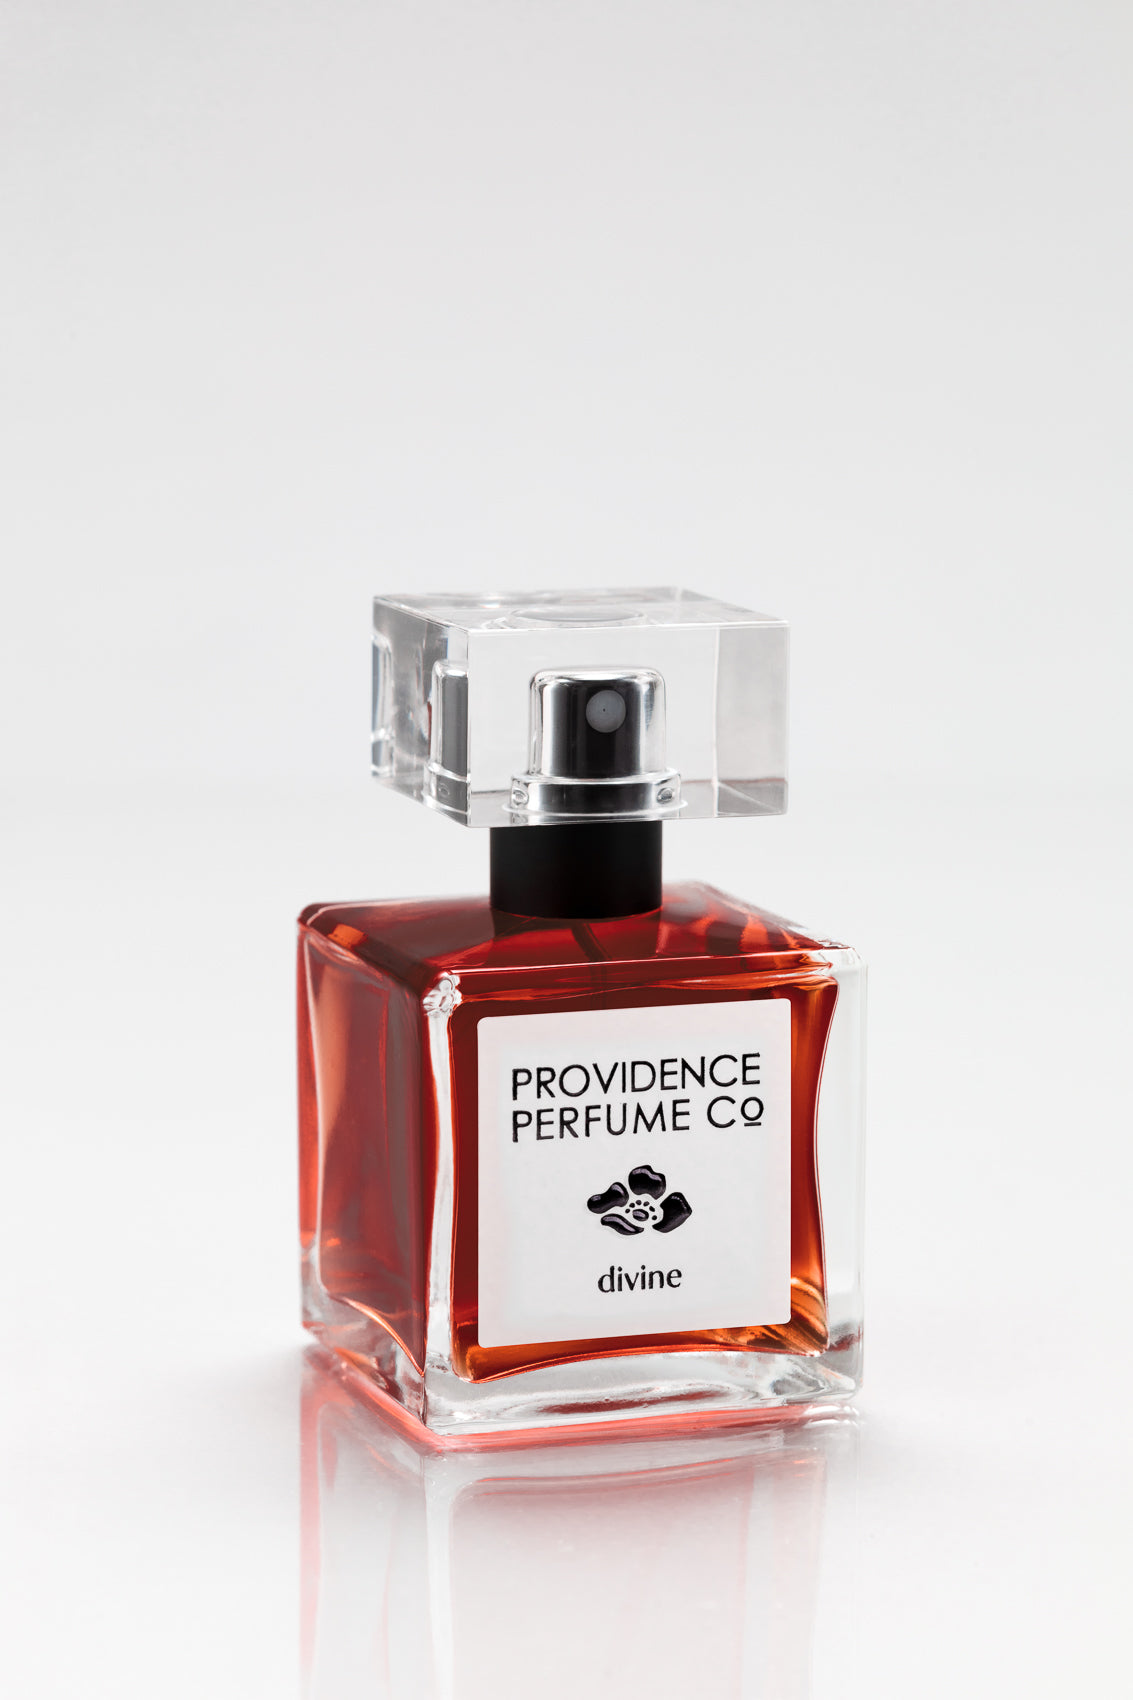 Divine eau de – Perfume Co.